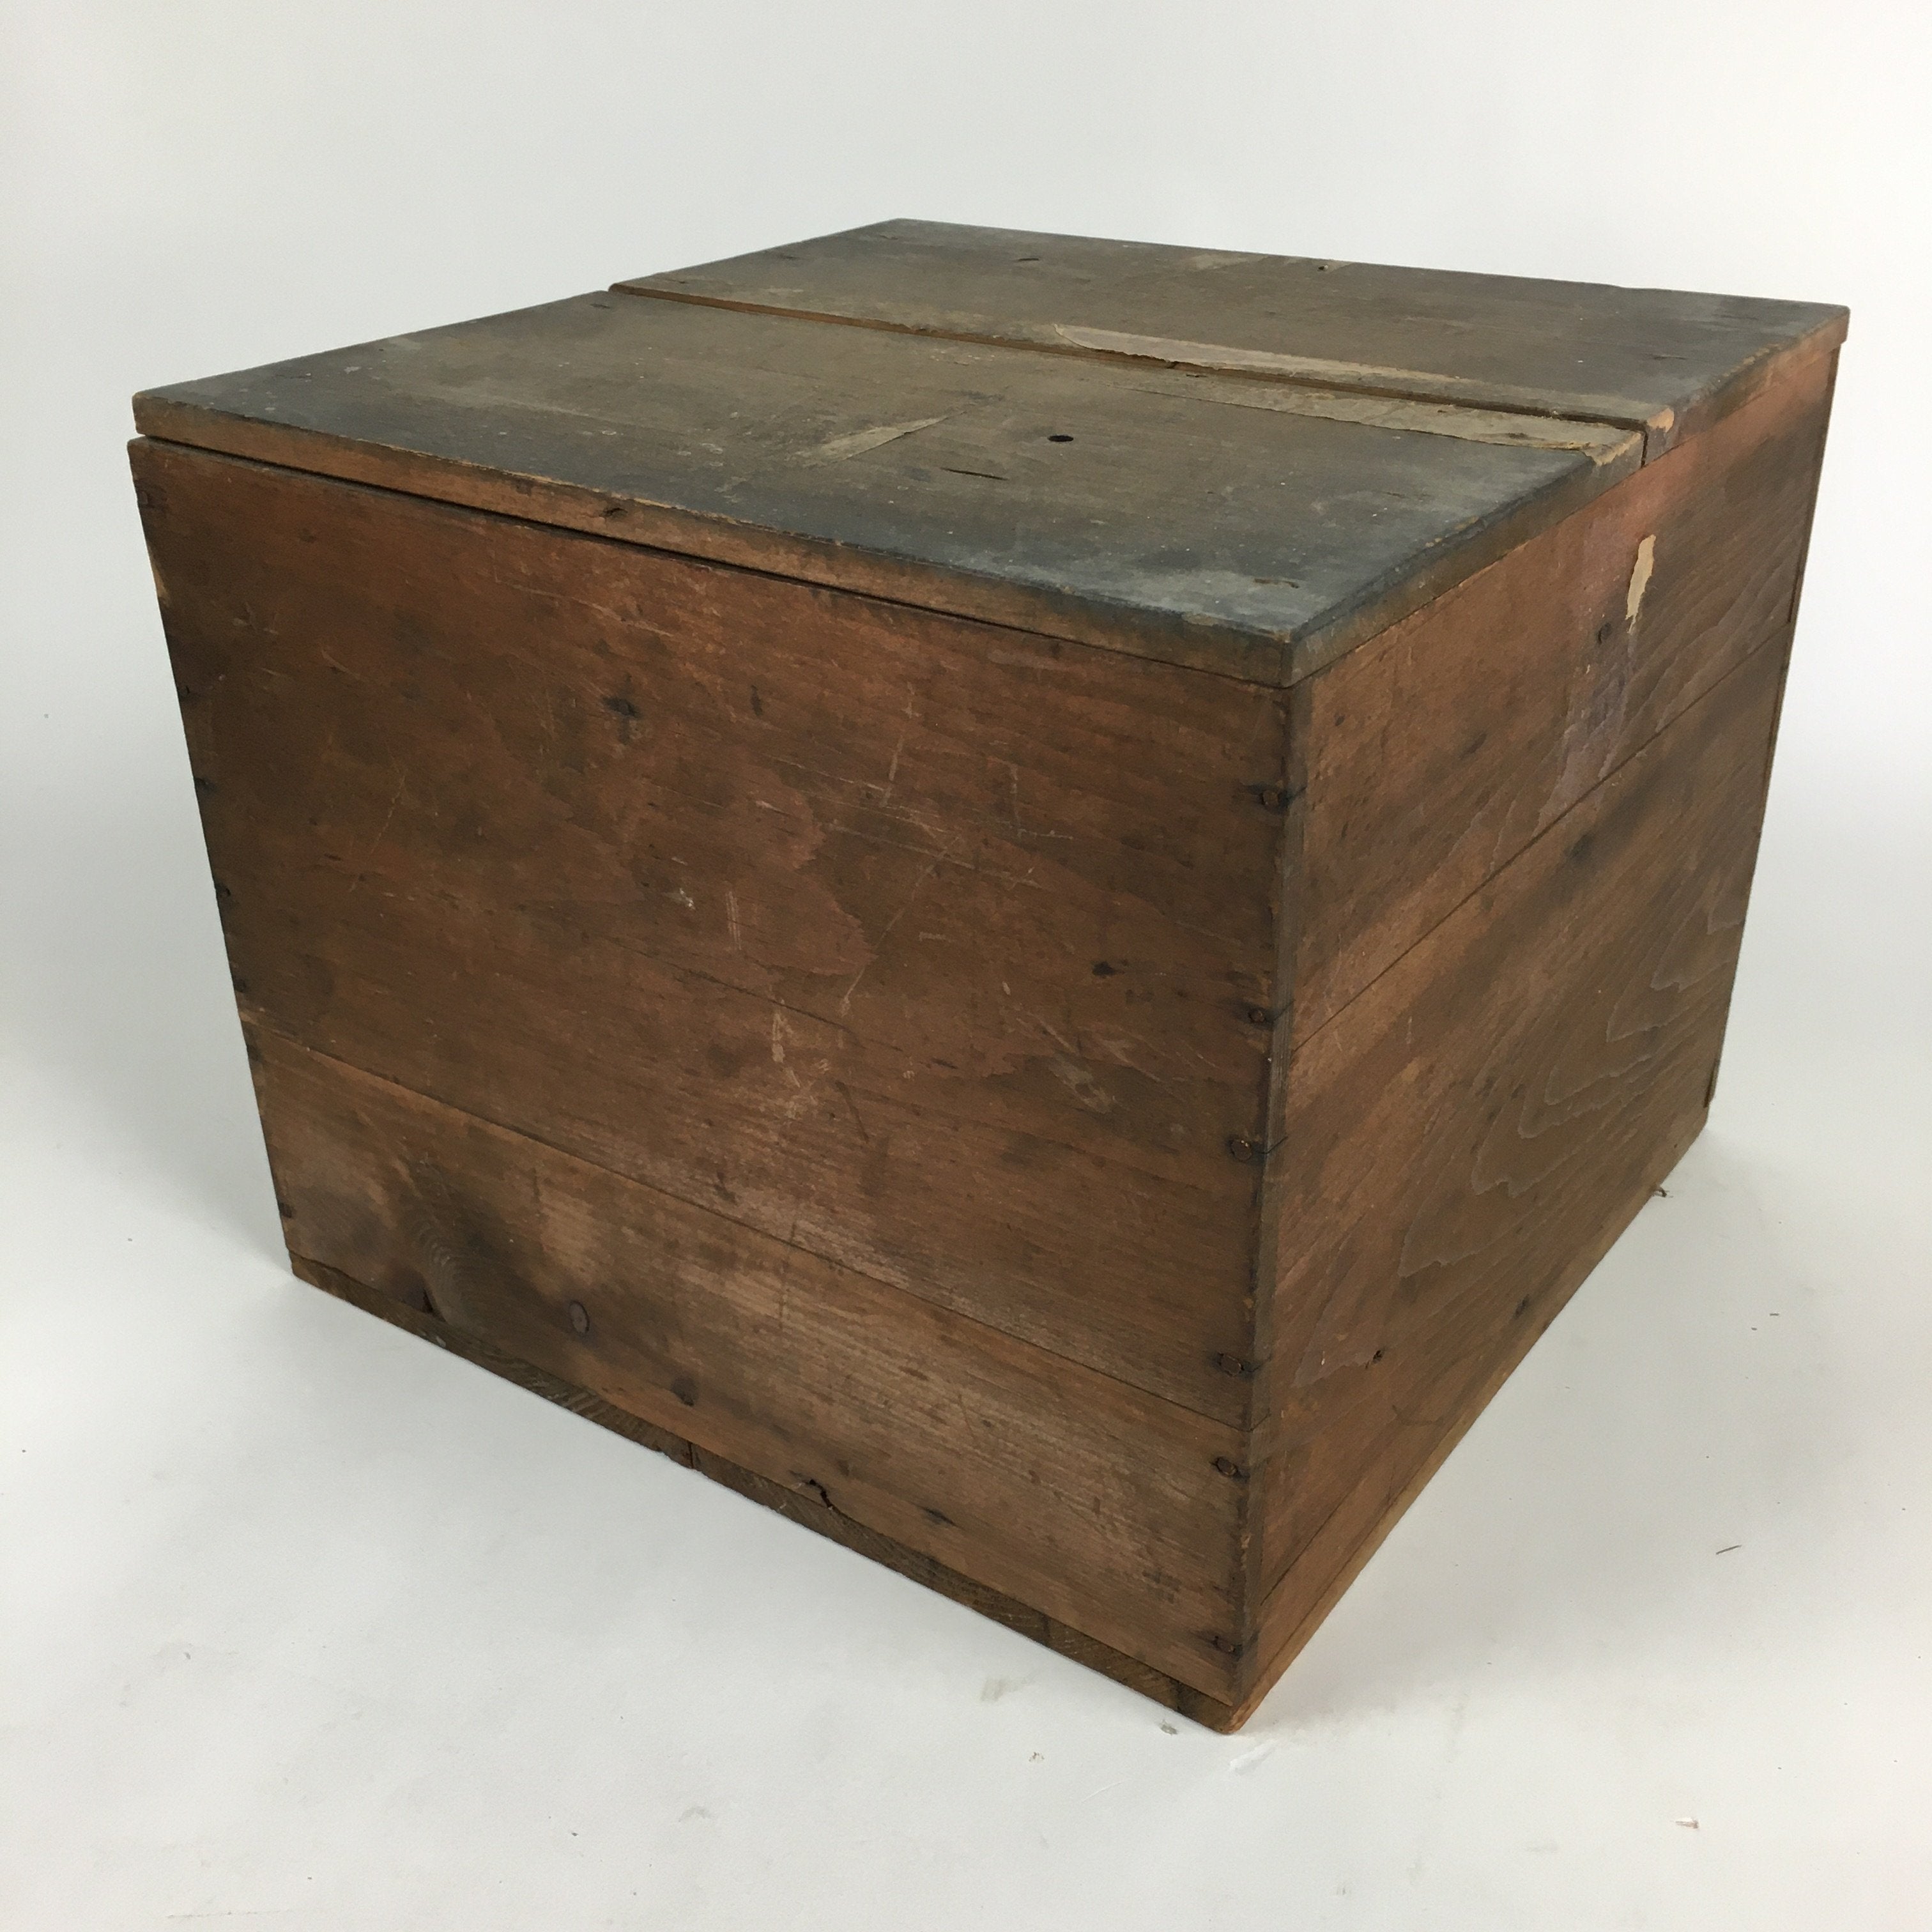 Japanese Wooden Storage Box Vtg Pottery Hako Inside 31.8x31.5x25cm WB871